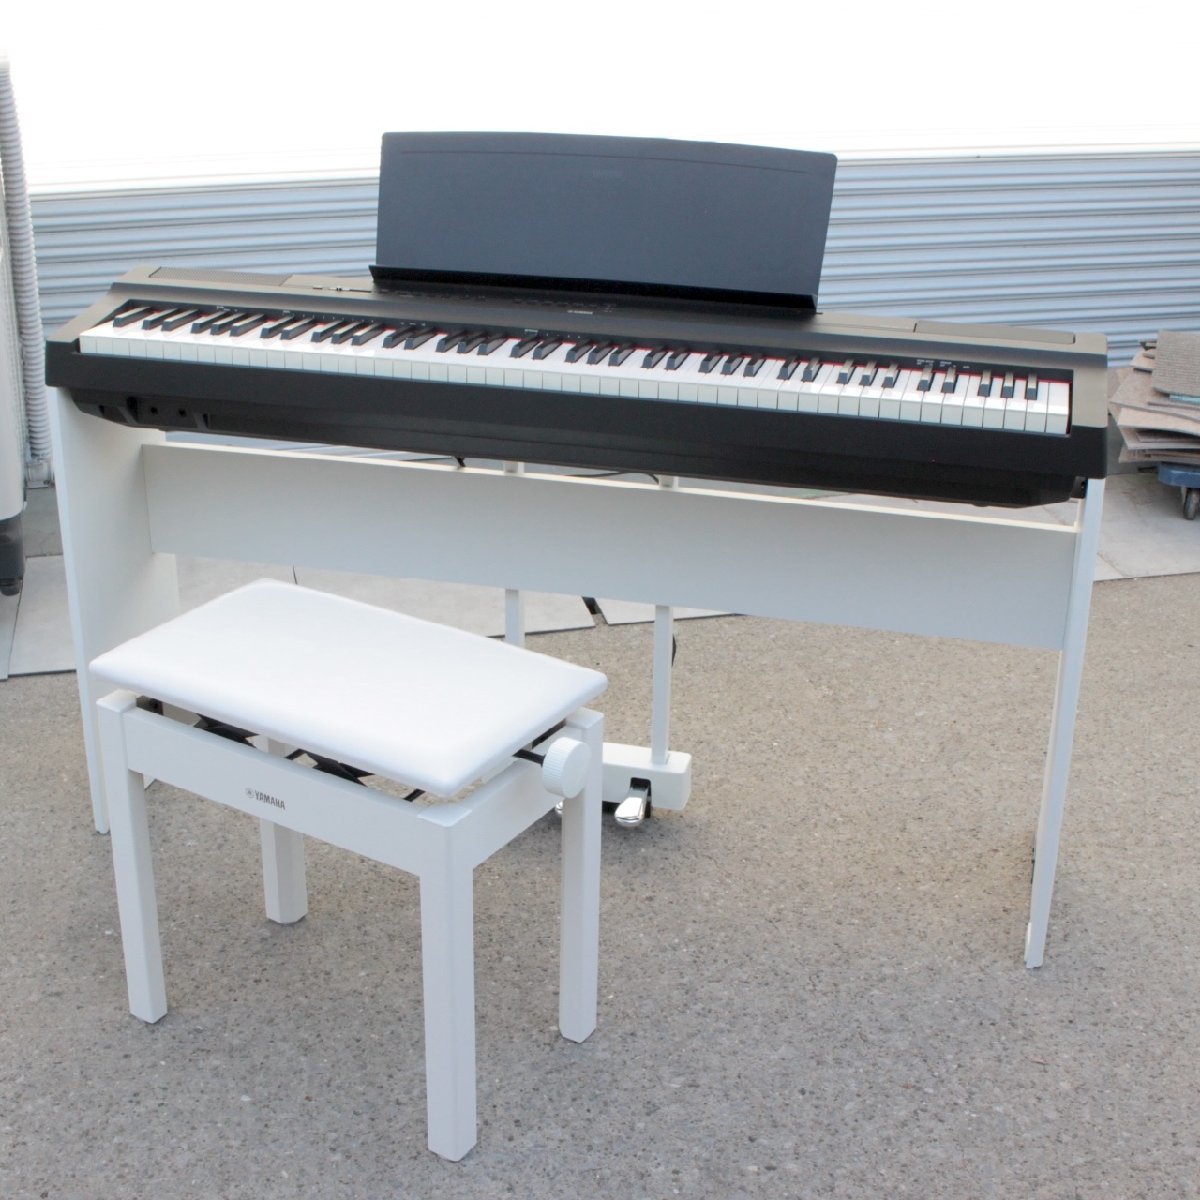 横浜市緑区にて ヤマハ 電子ピアノ P-125B 2020年製 を出張買取させて頂きました。